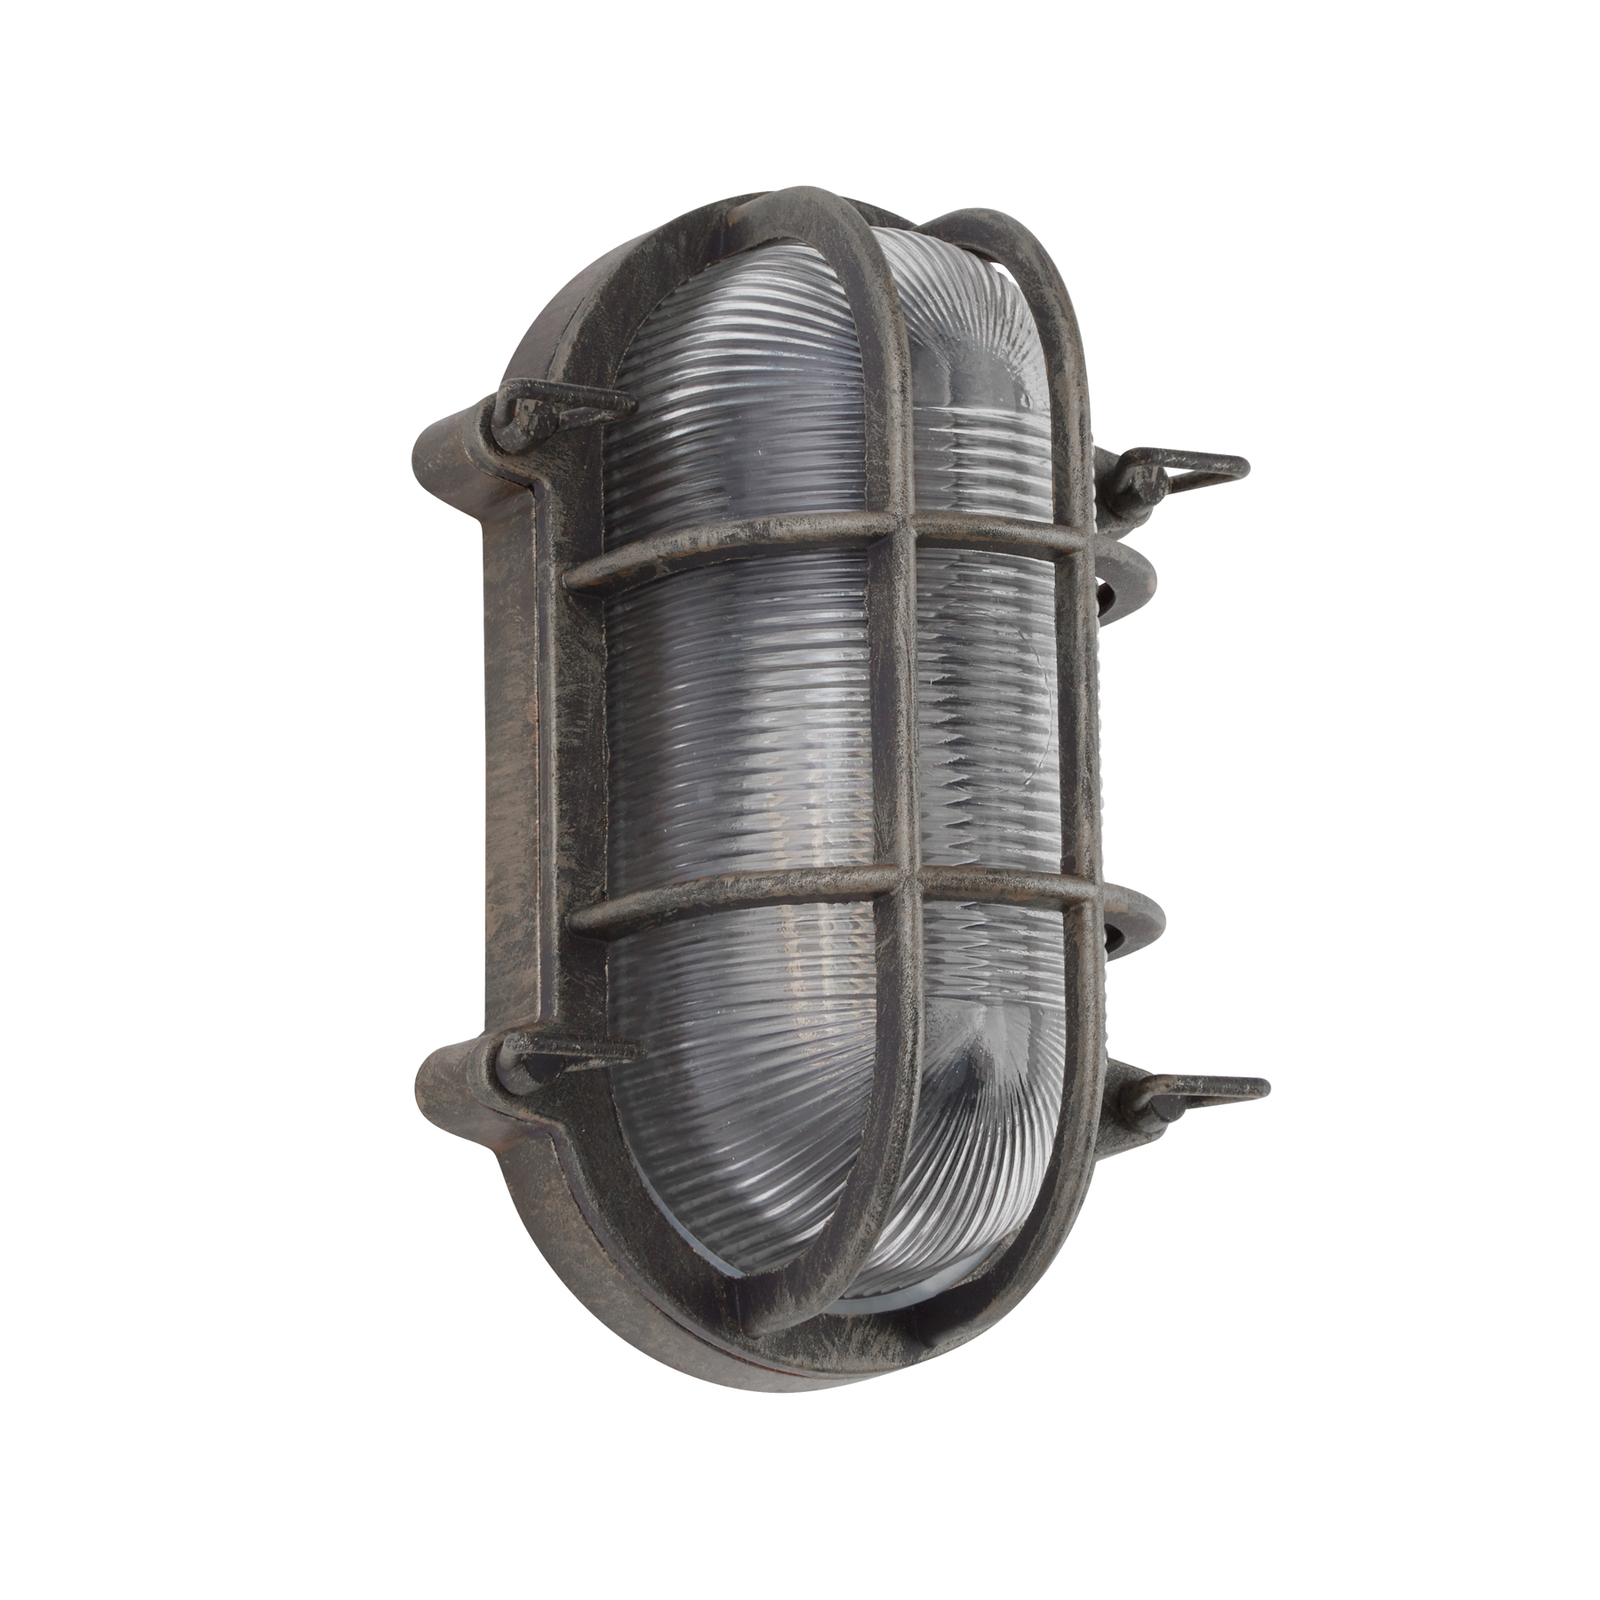 Scheepslamp Porto ovaal, zwart-zilver